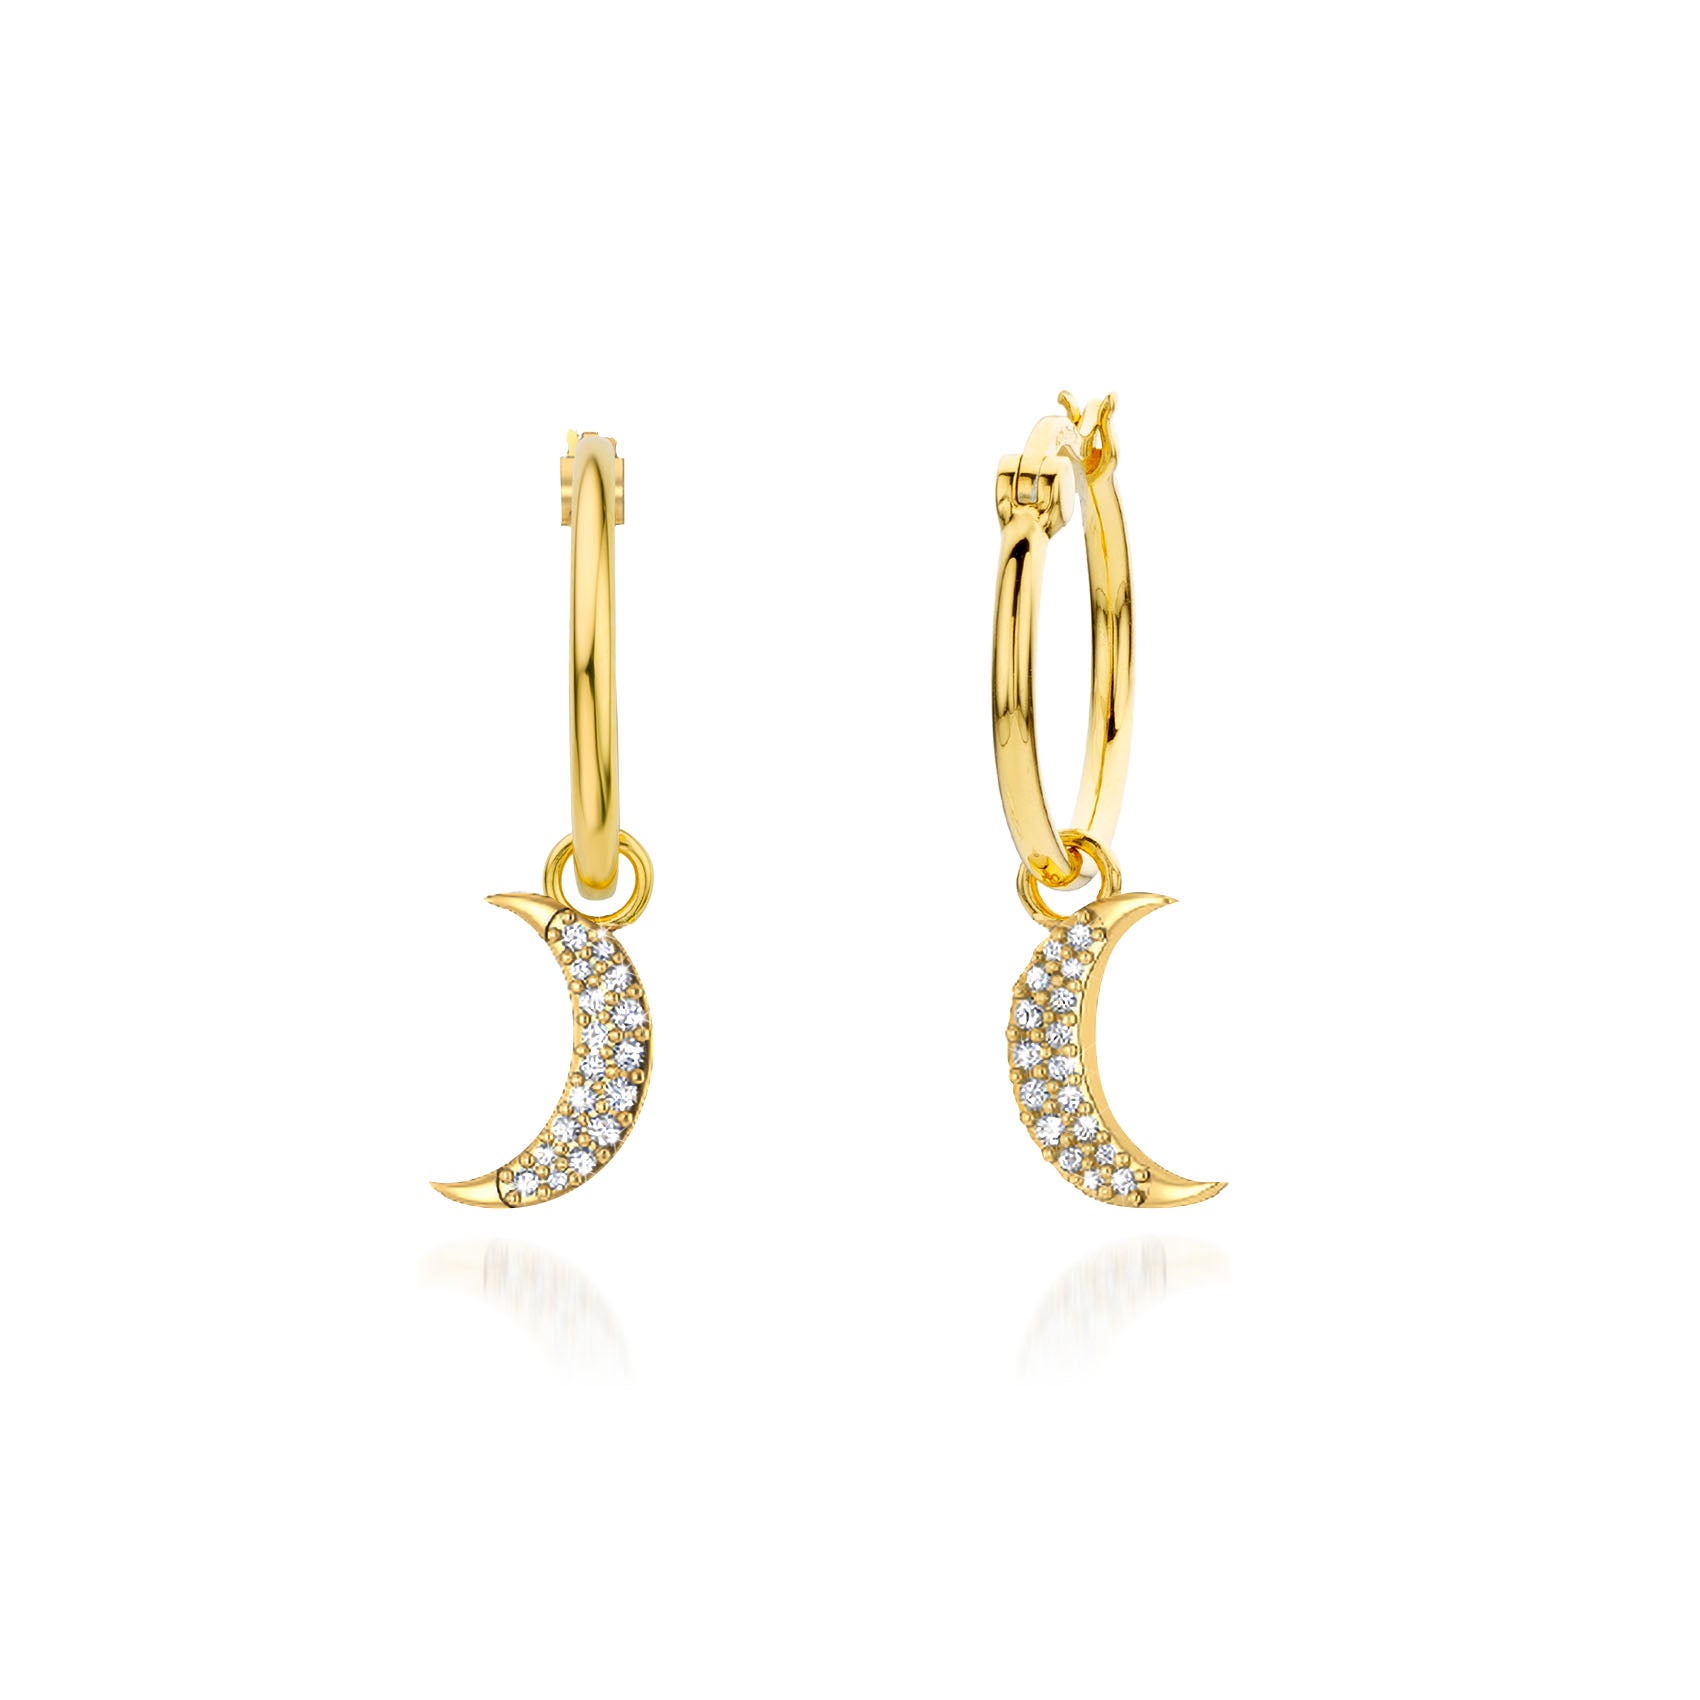 Buy 14k Gold Moon Star Earrings Moon Star Earrings 925 Sterling Silver 14k Gold  Earrings Ear Jacket Earrings Online in India - Etsy